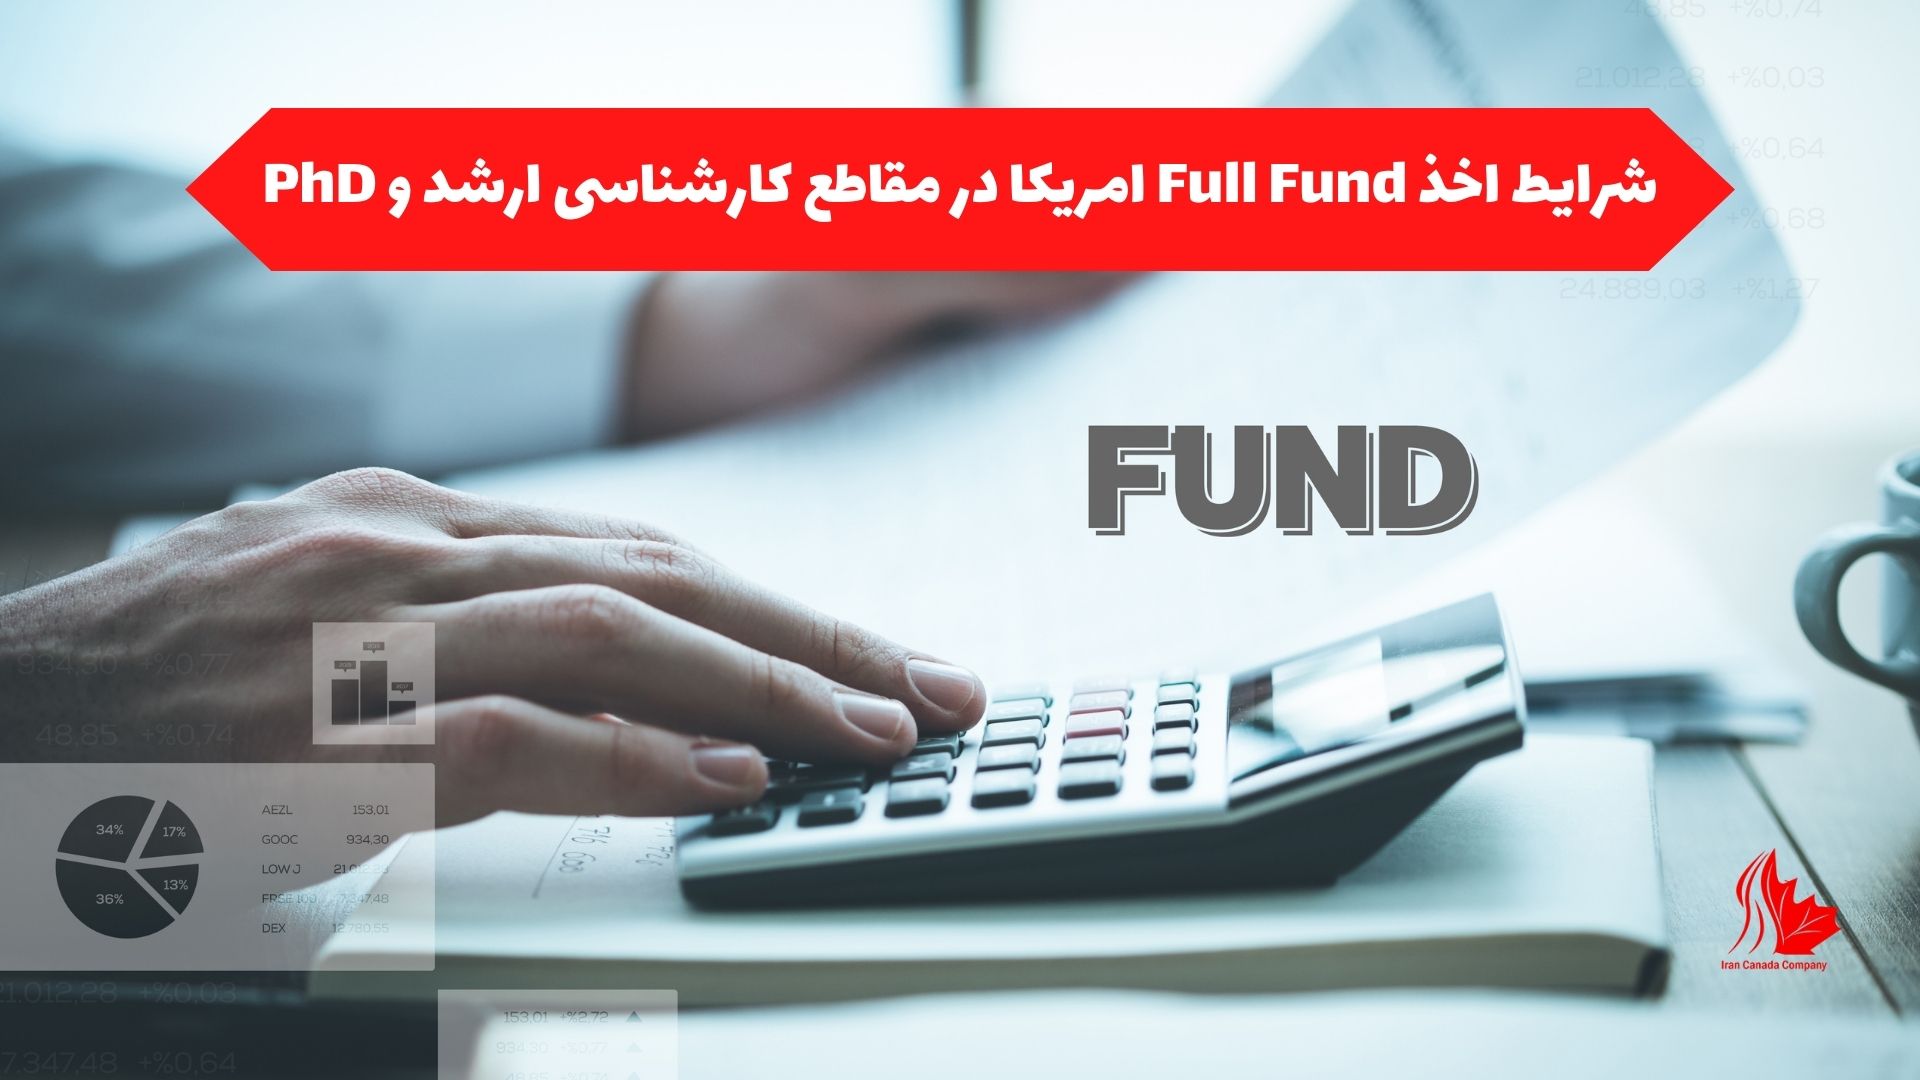 شرایط اخذ Full Fund امریکا در مقاطع کارشناسی ارشد و PhD